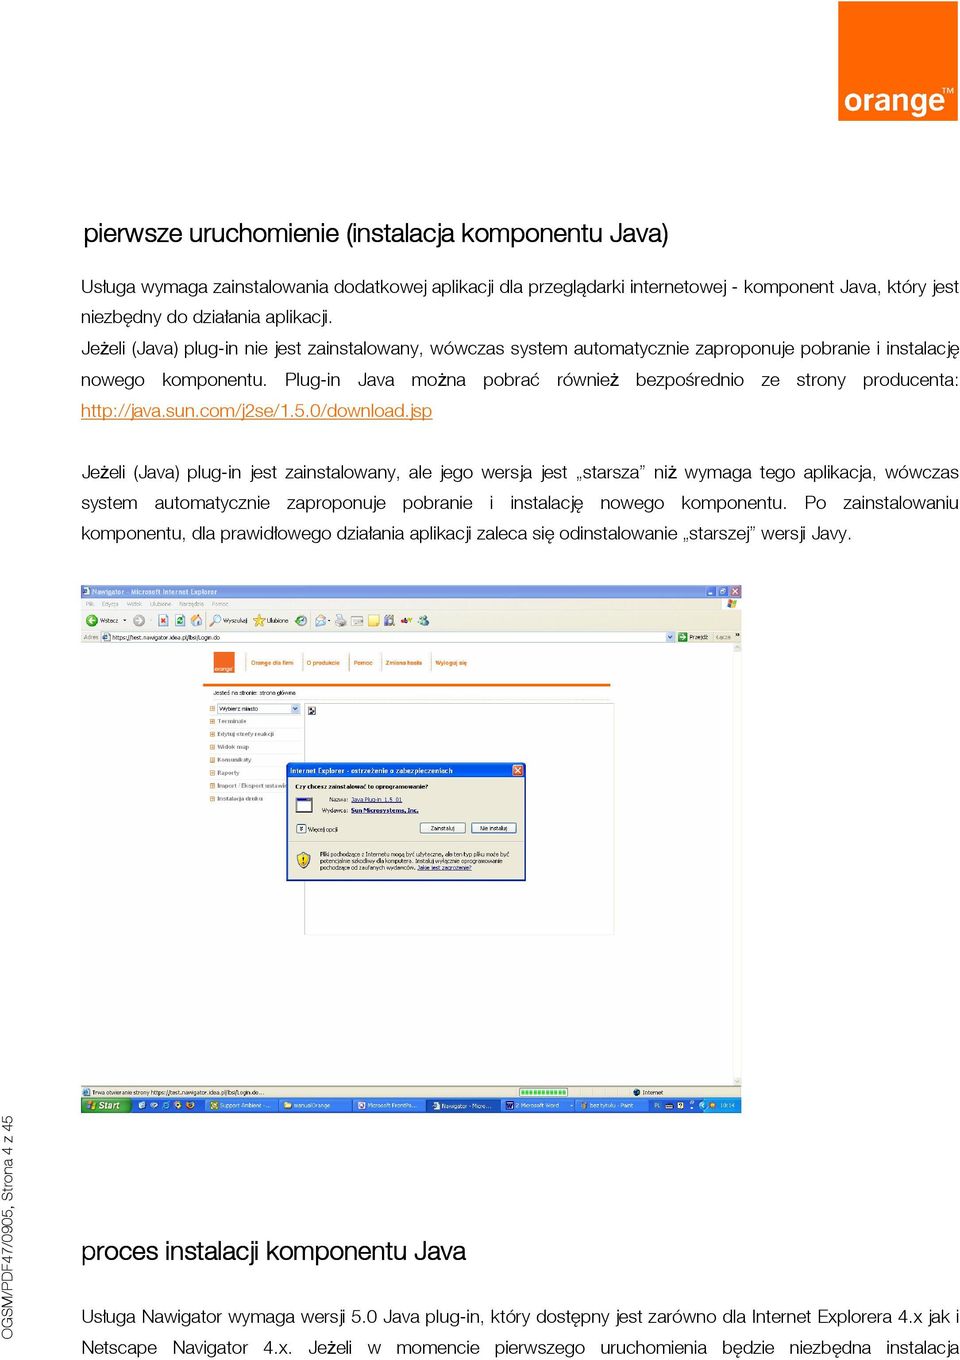 Plug-in Java można pobrać również bezpośrednio ze strony producenta: http://java.sun.com/j2se/1.5.0/download.